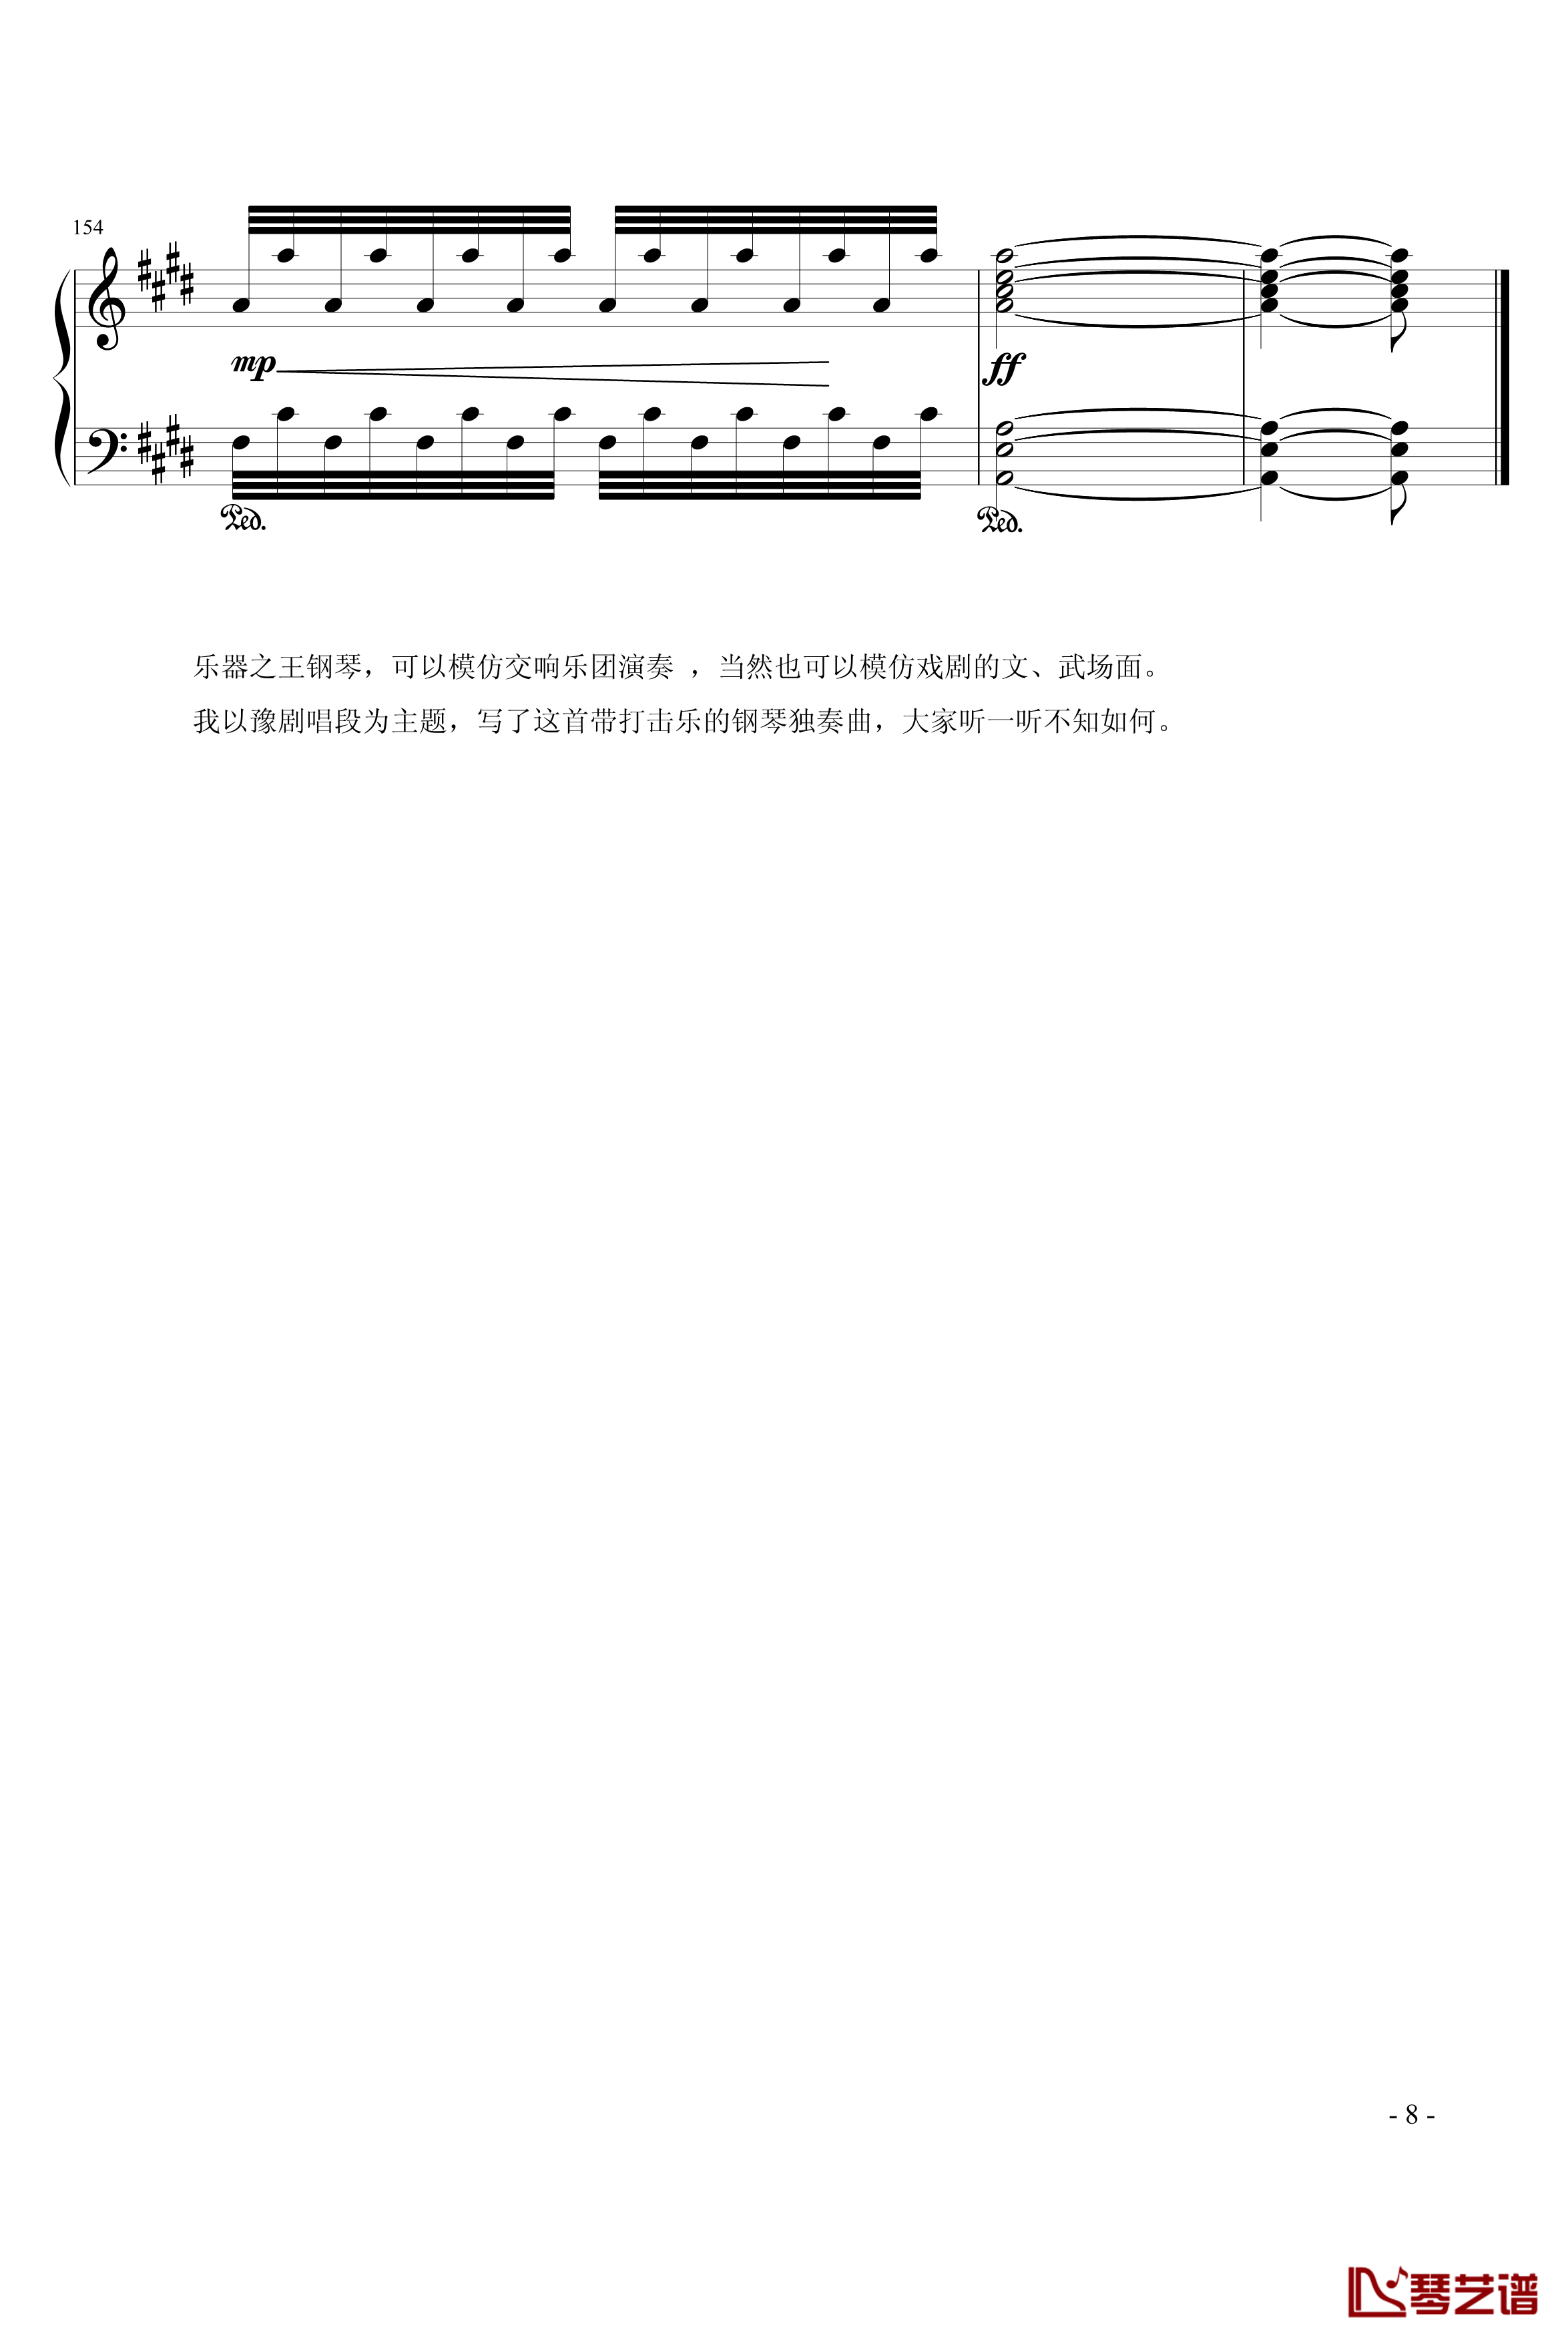 狂想曲钢琴谱-902chang8